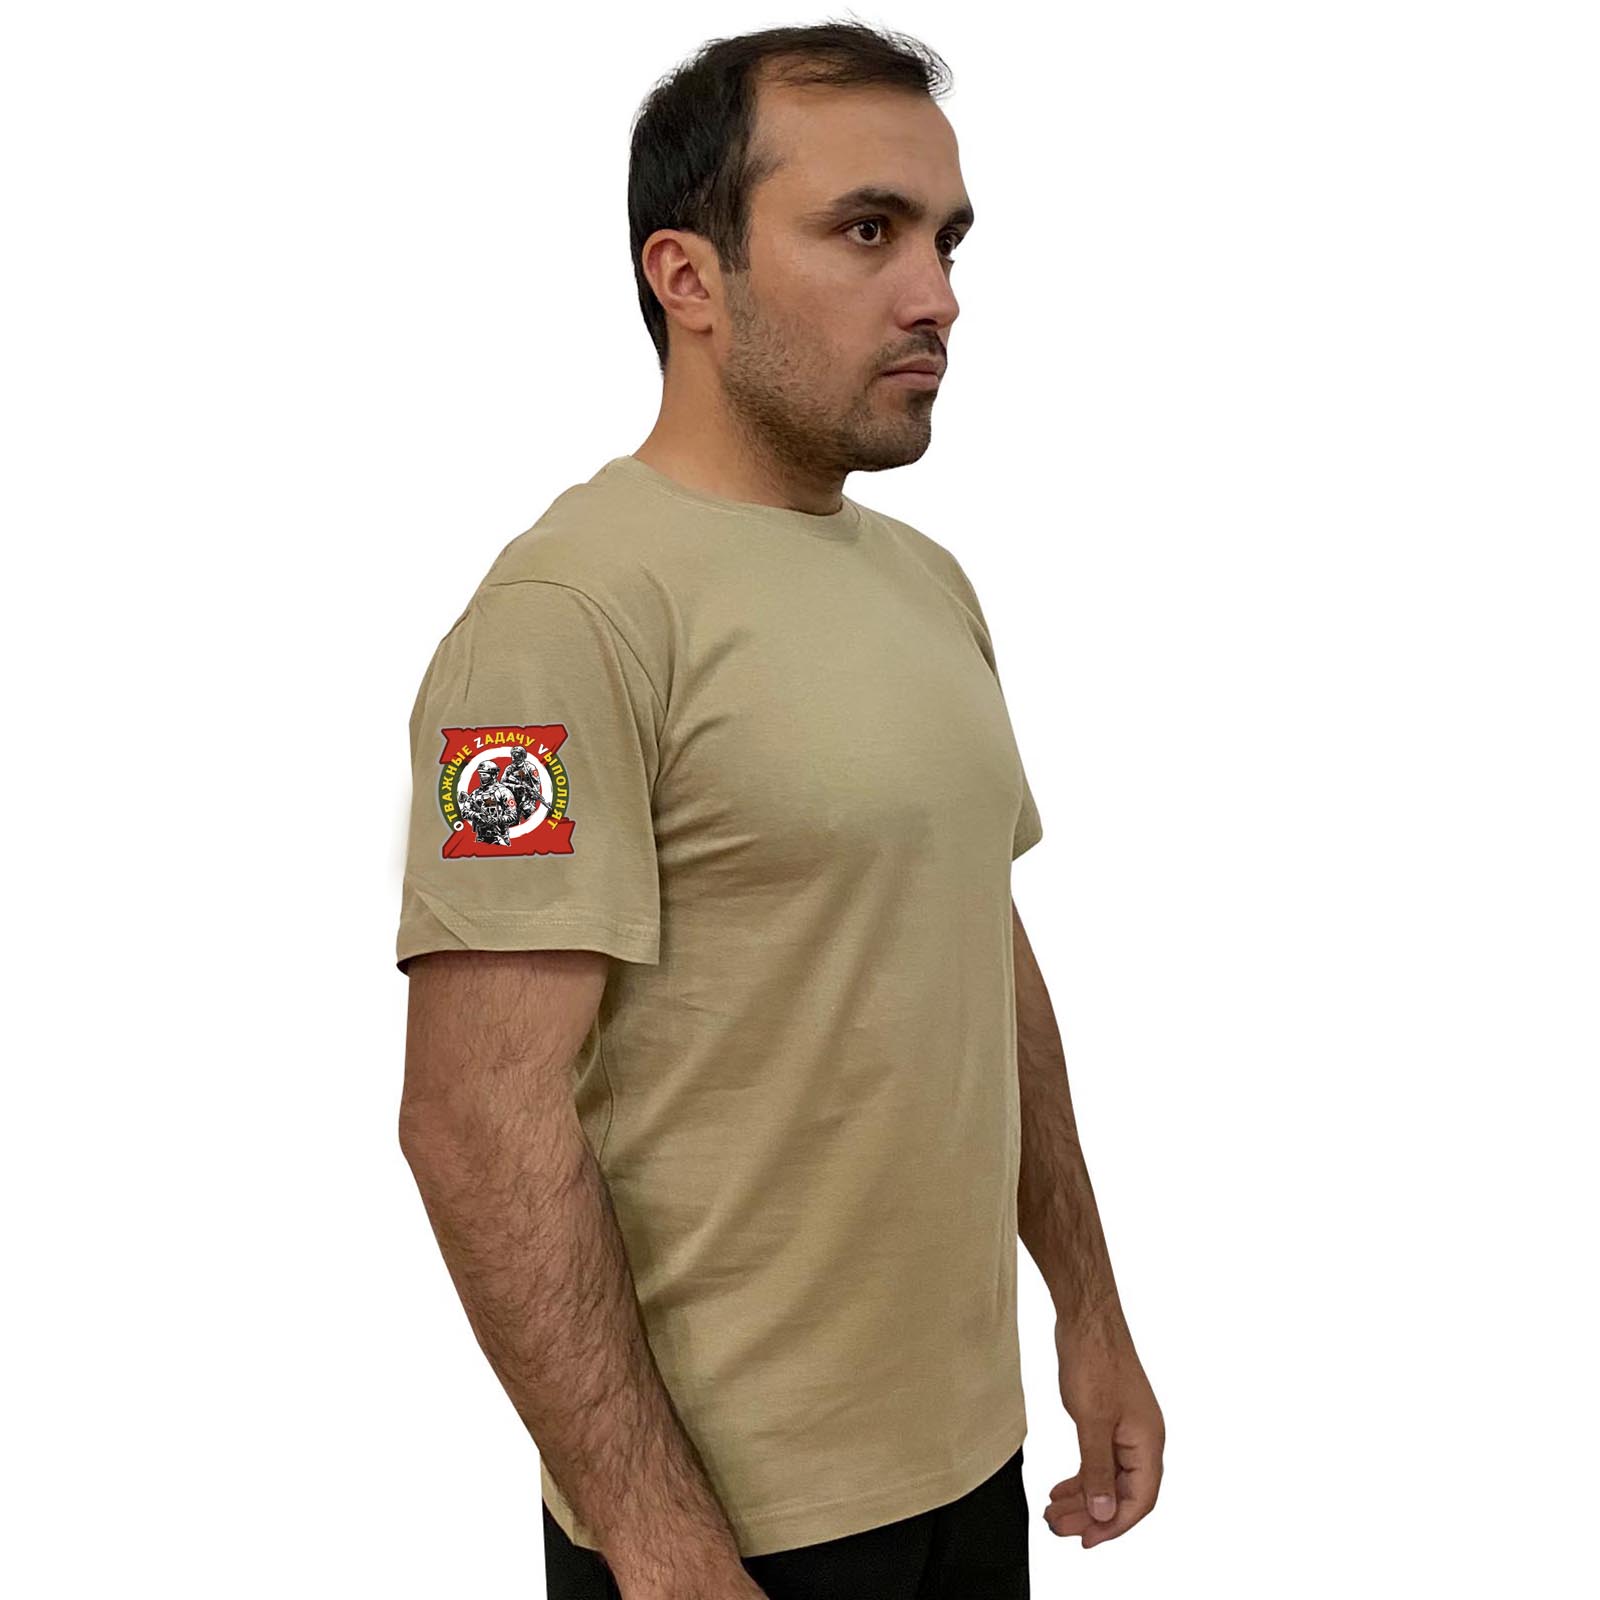 Песочная футболка с термотрансфером "Отважные Zадачу Vыполнят" на рукаве